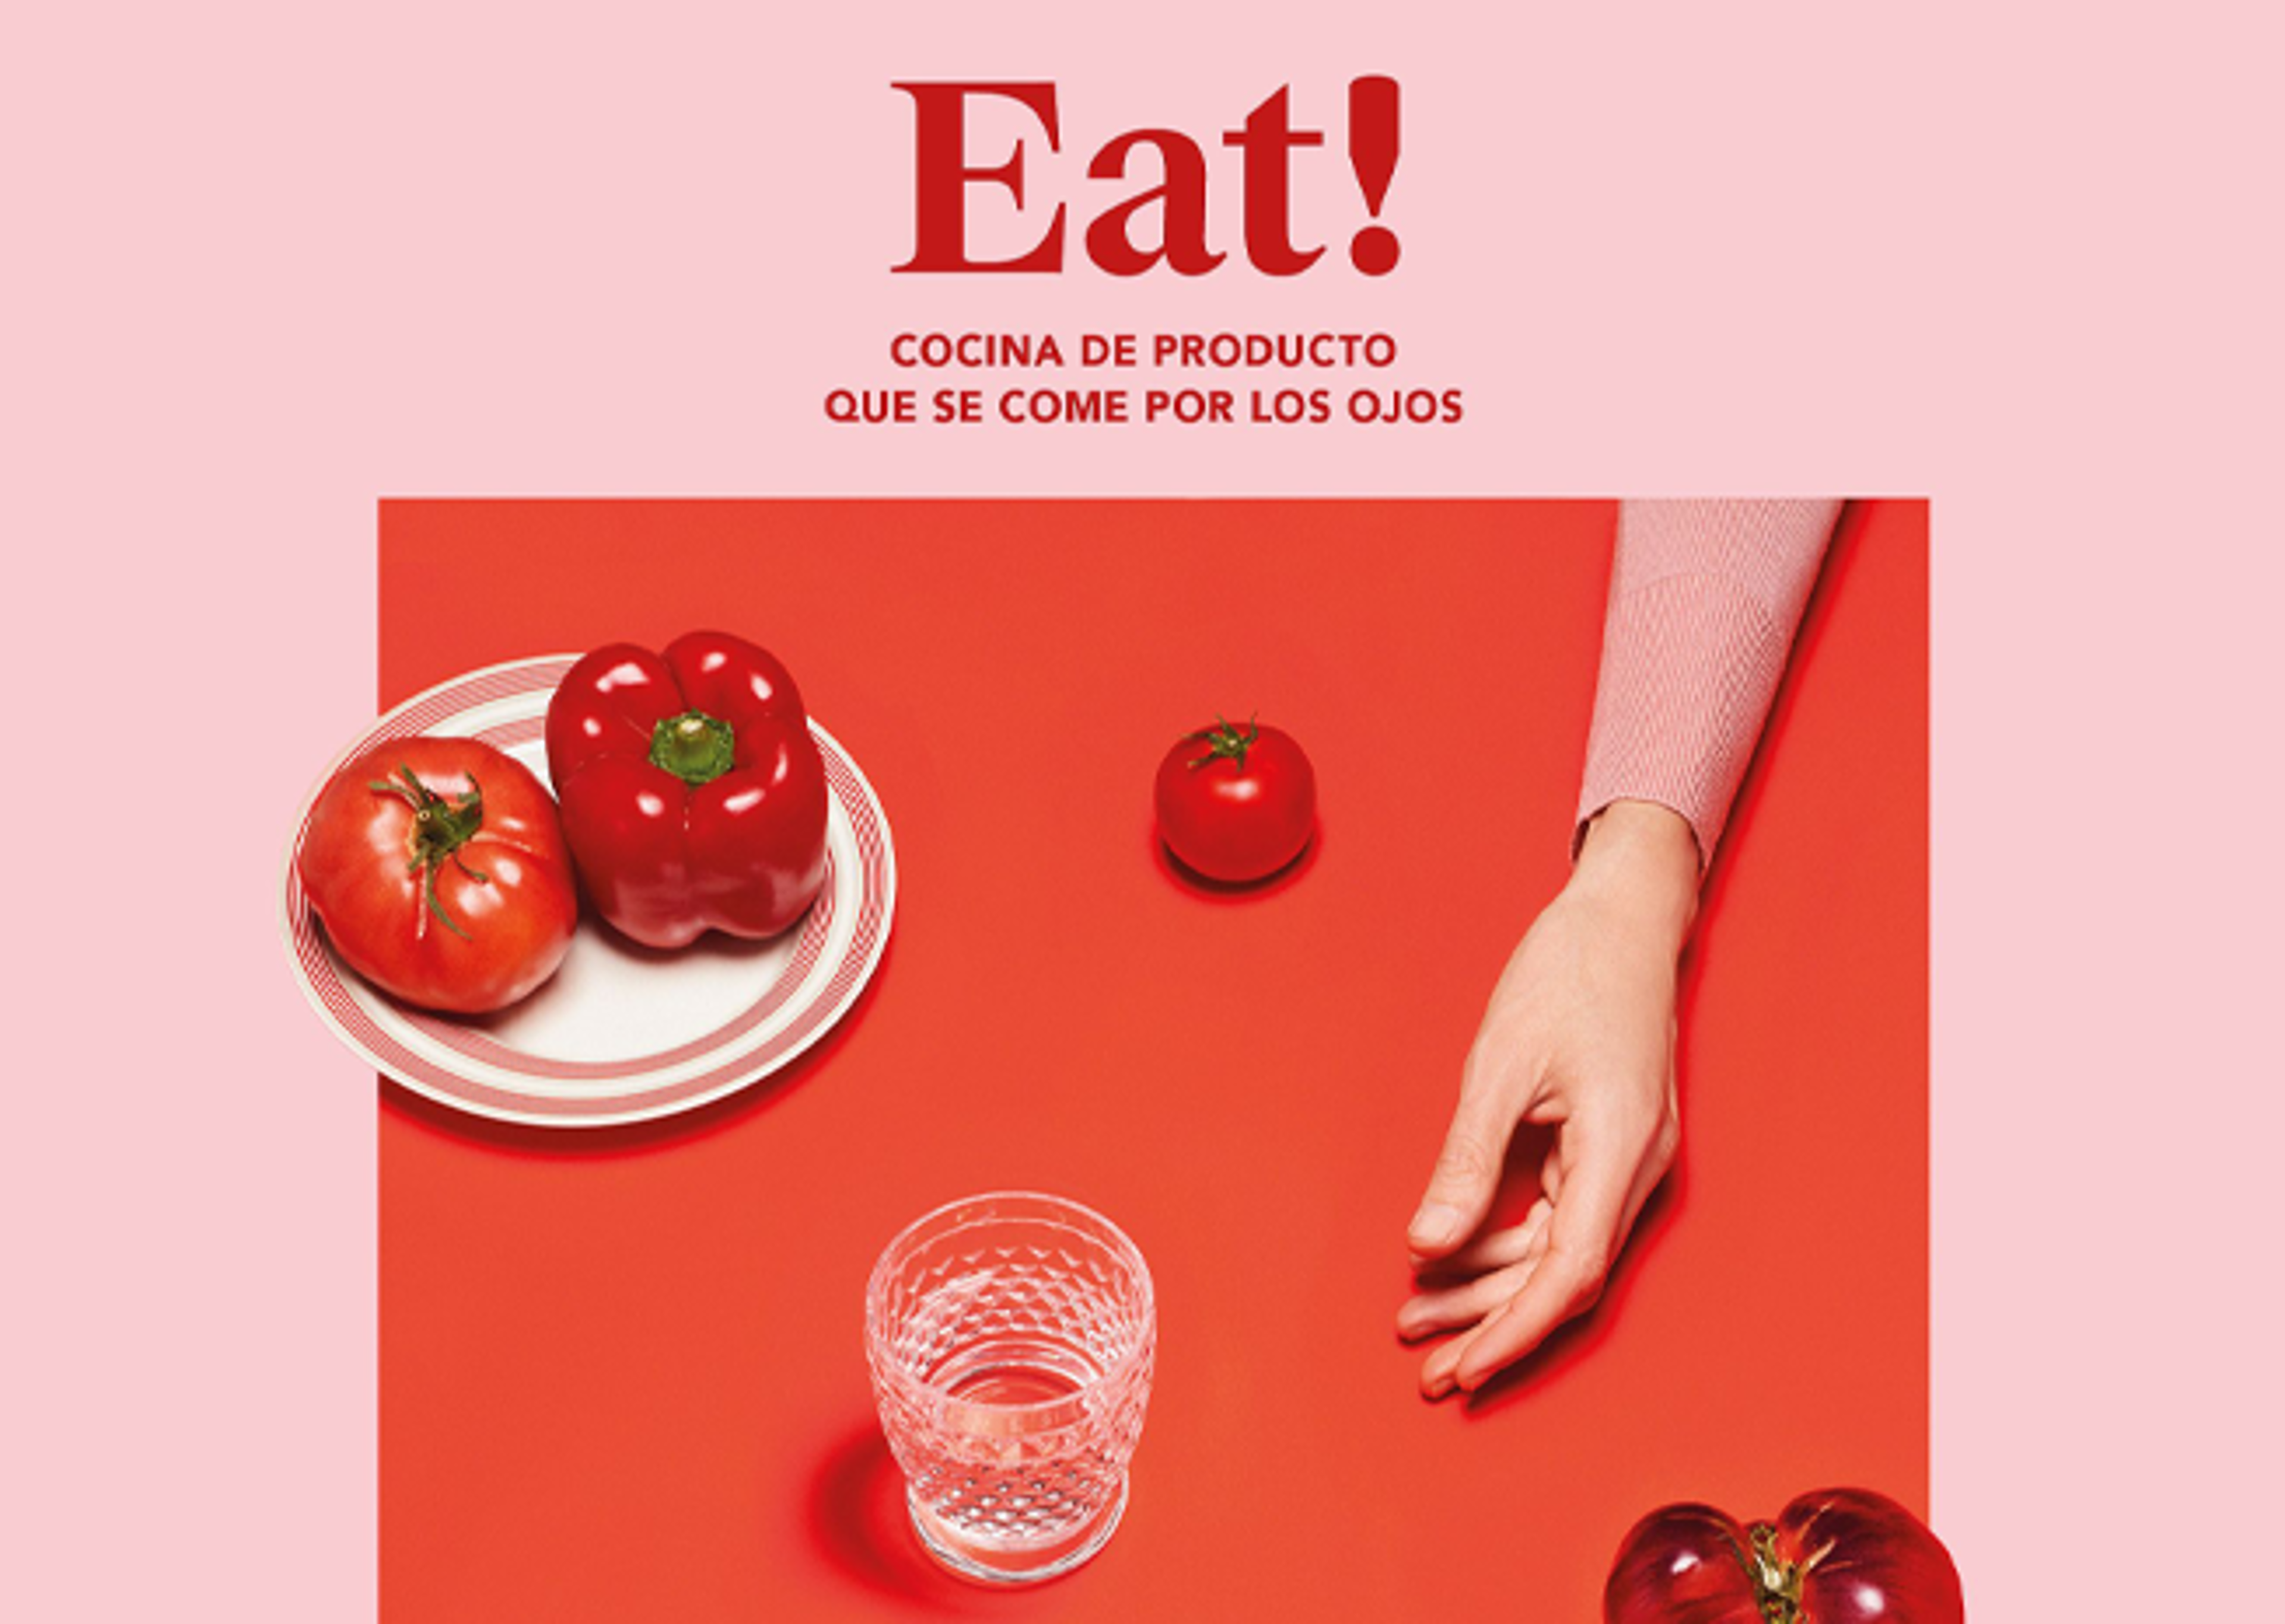 Una elegante disposición de alimentos con tomates y pimiento en un plato, un vaso y la mano de una persona, todo en una superficie roja con el texto "Eat!".